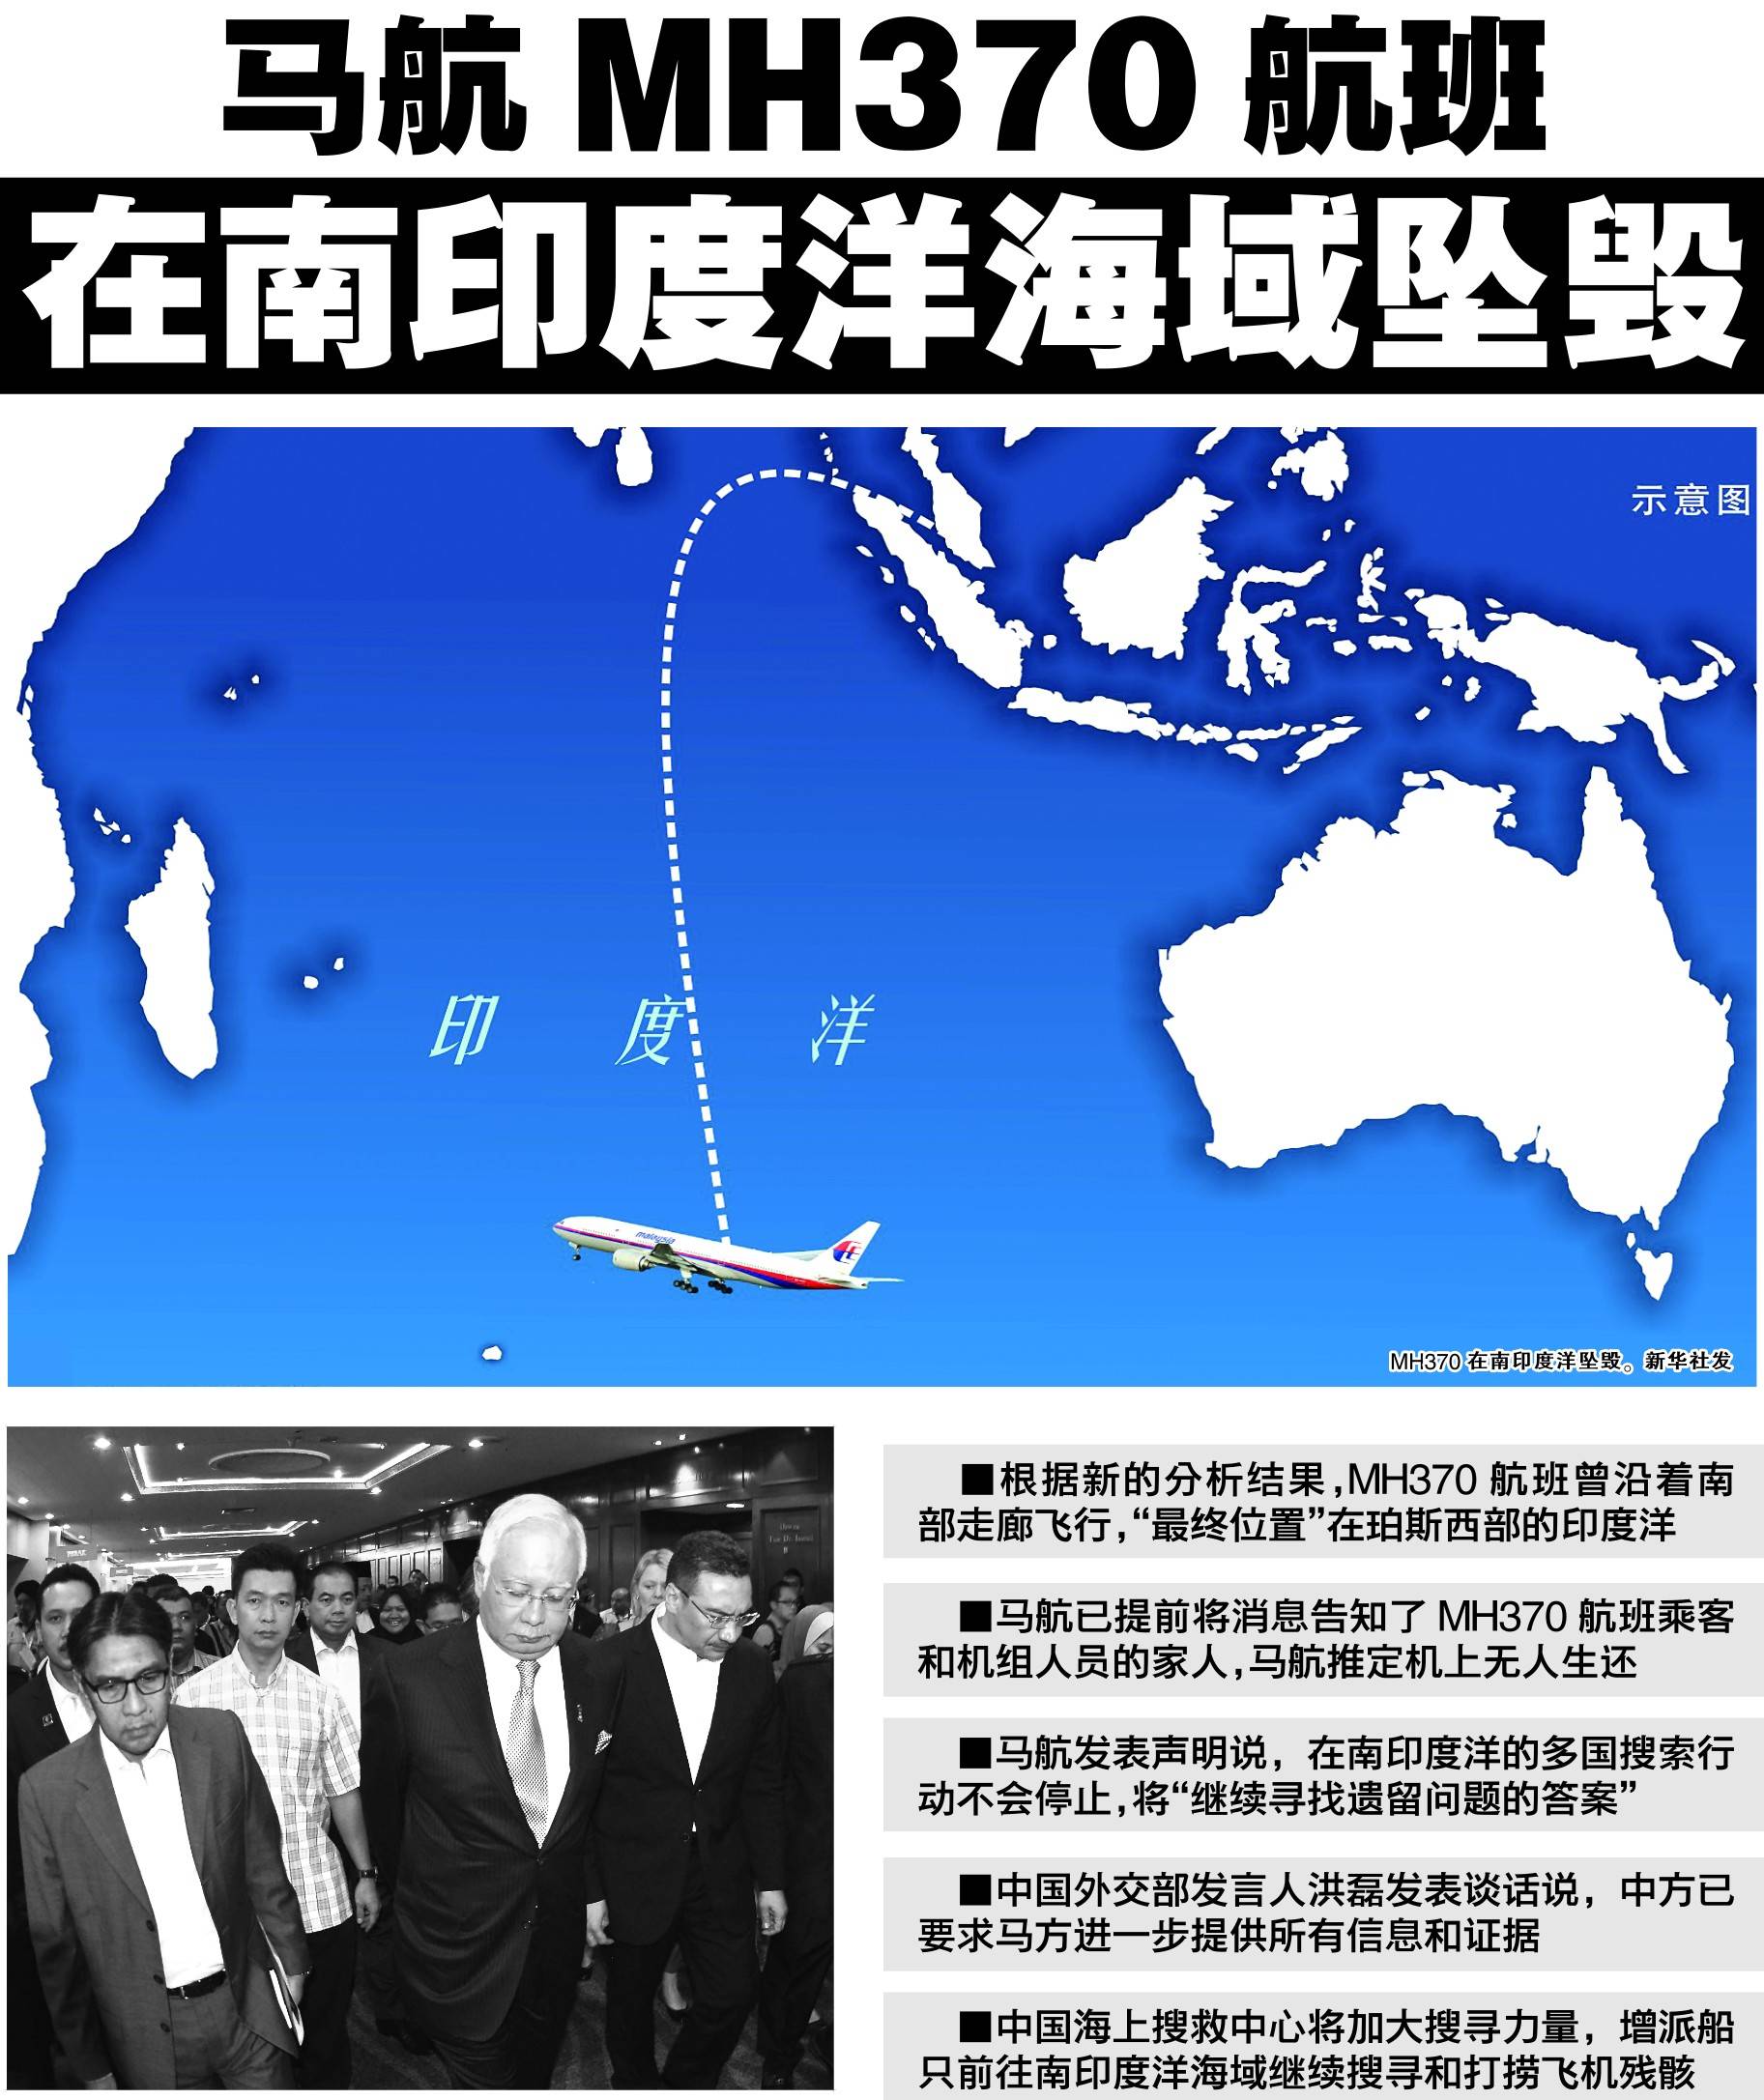 机长Zaharie Ahmad Shah最新调查!马航MH370乘客坠海前皆已死亡[23P]|无奇不有 - 武当休闲山庄 - 稳定,和谐,人性 ...